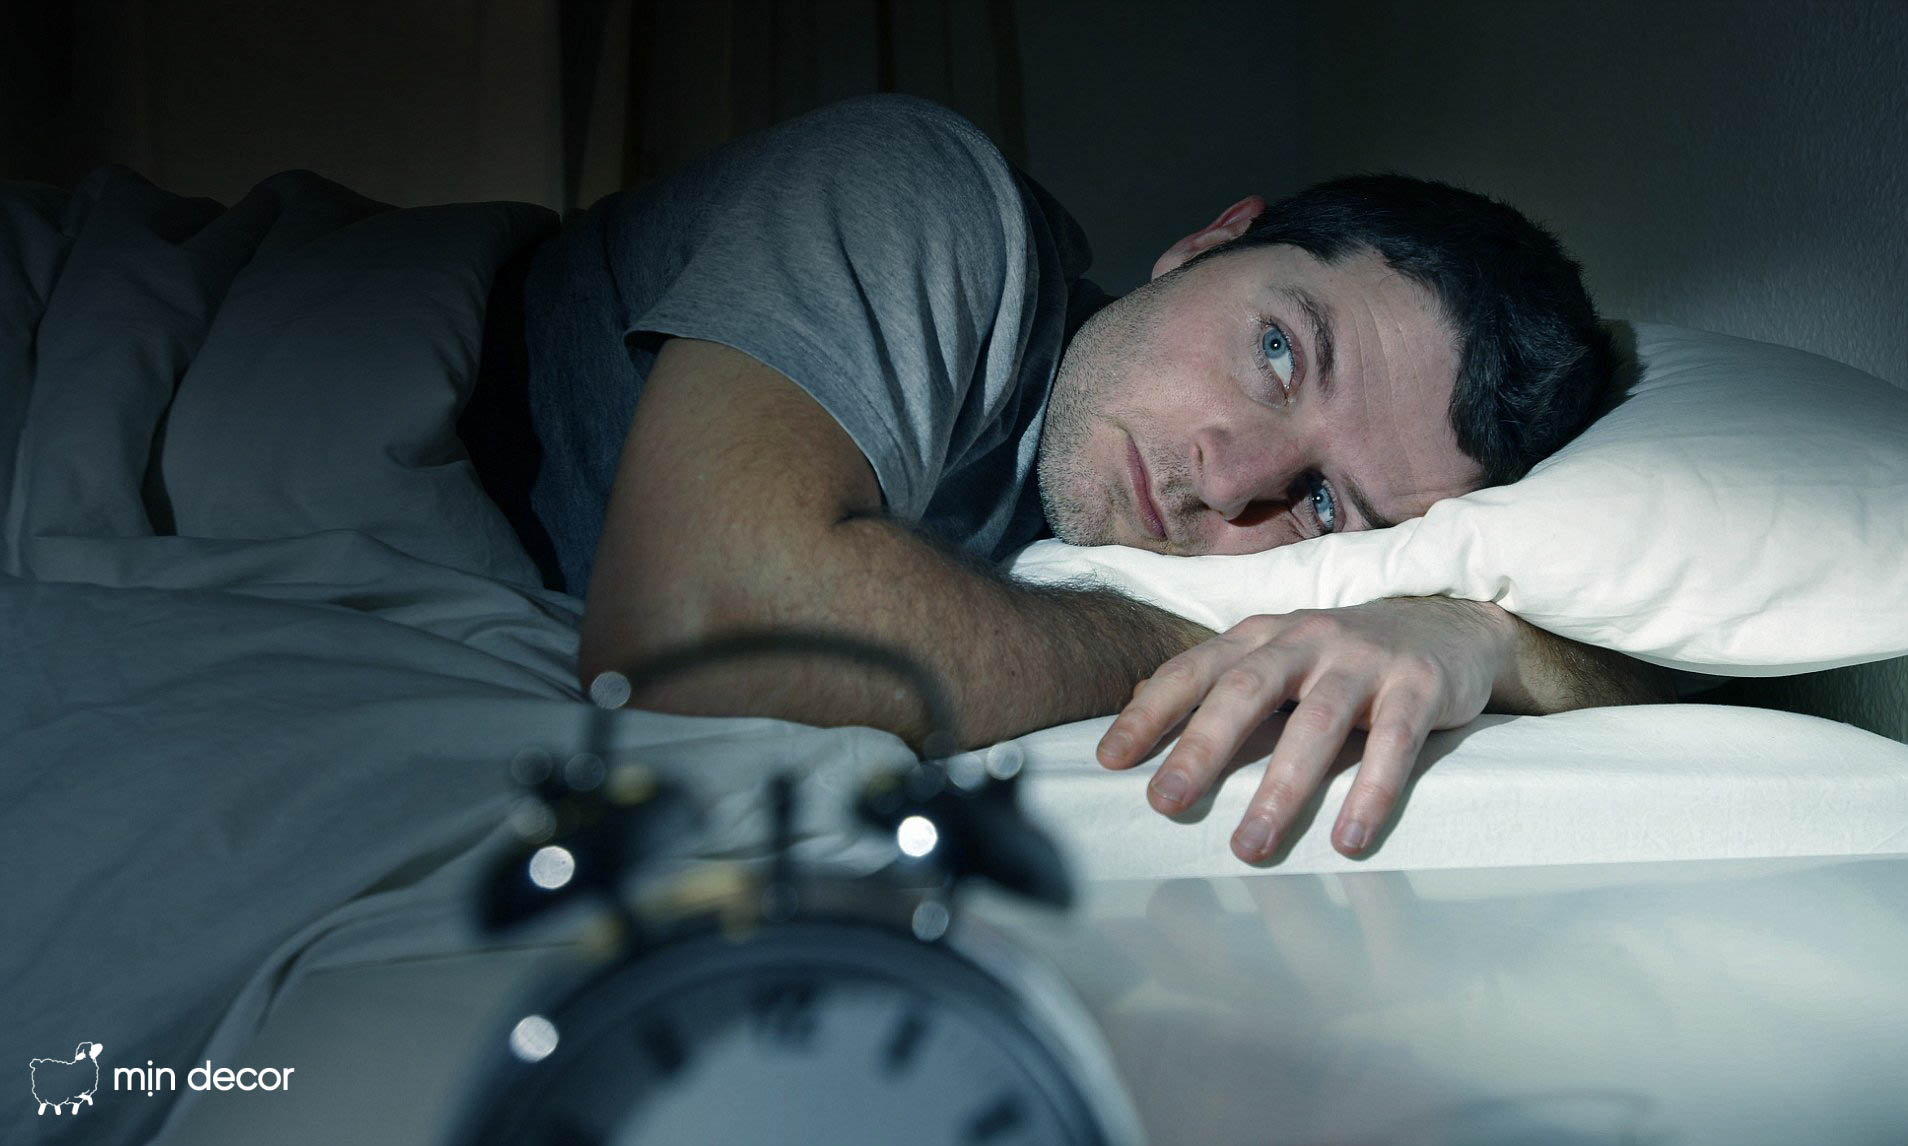 Buồn ngủ mà không ngủ được là bệnh gì? Điều trị thế nào?